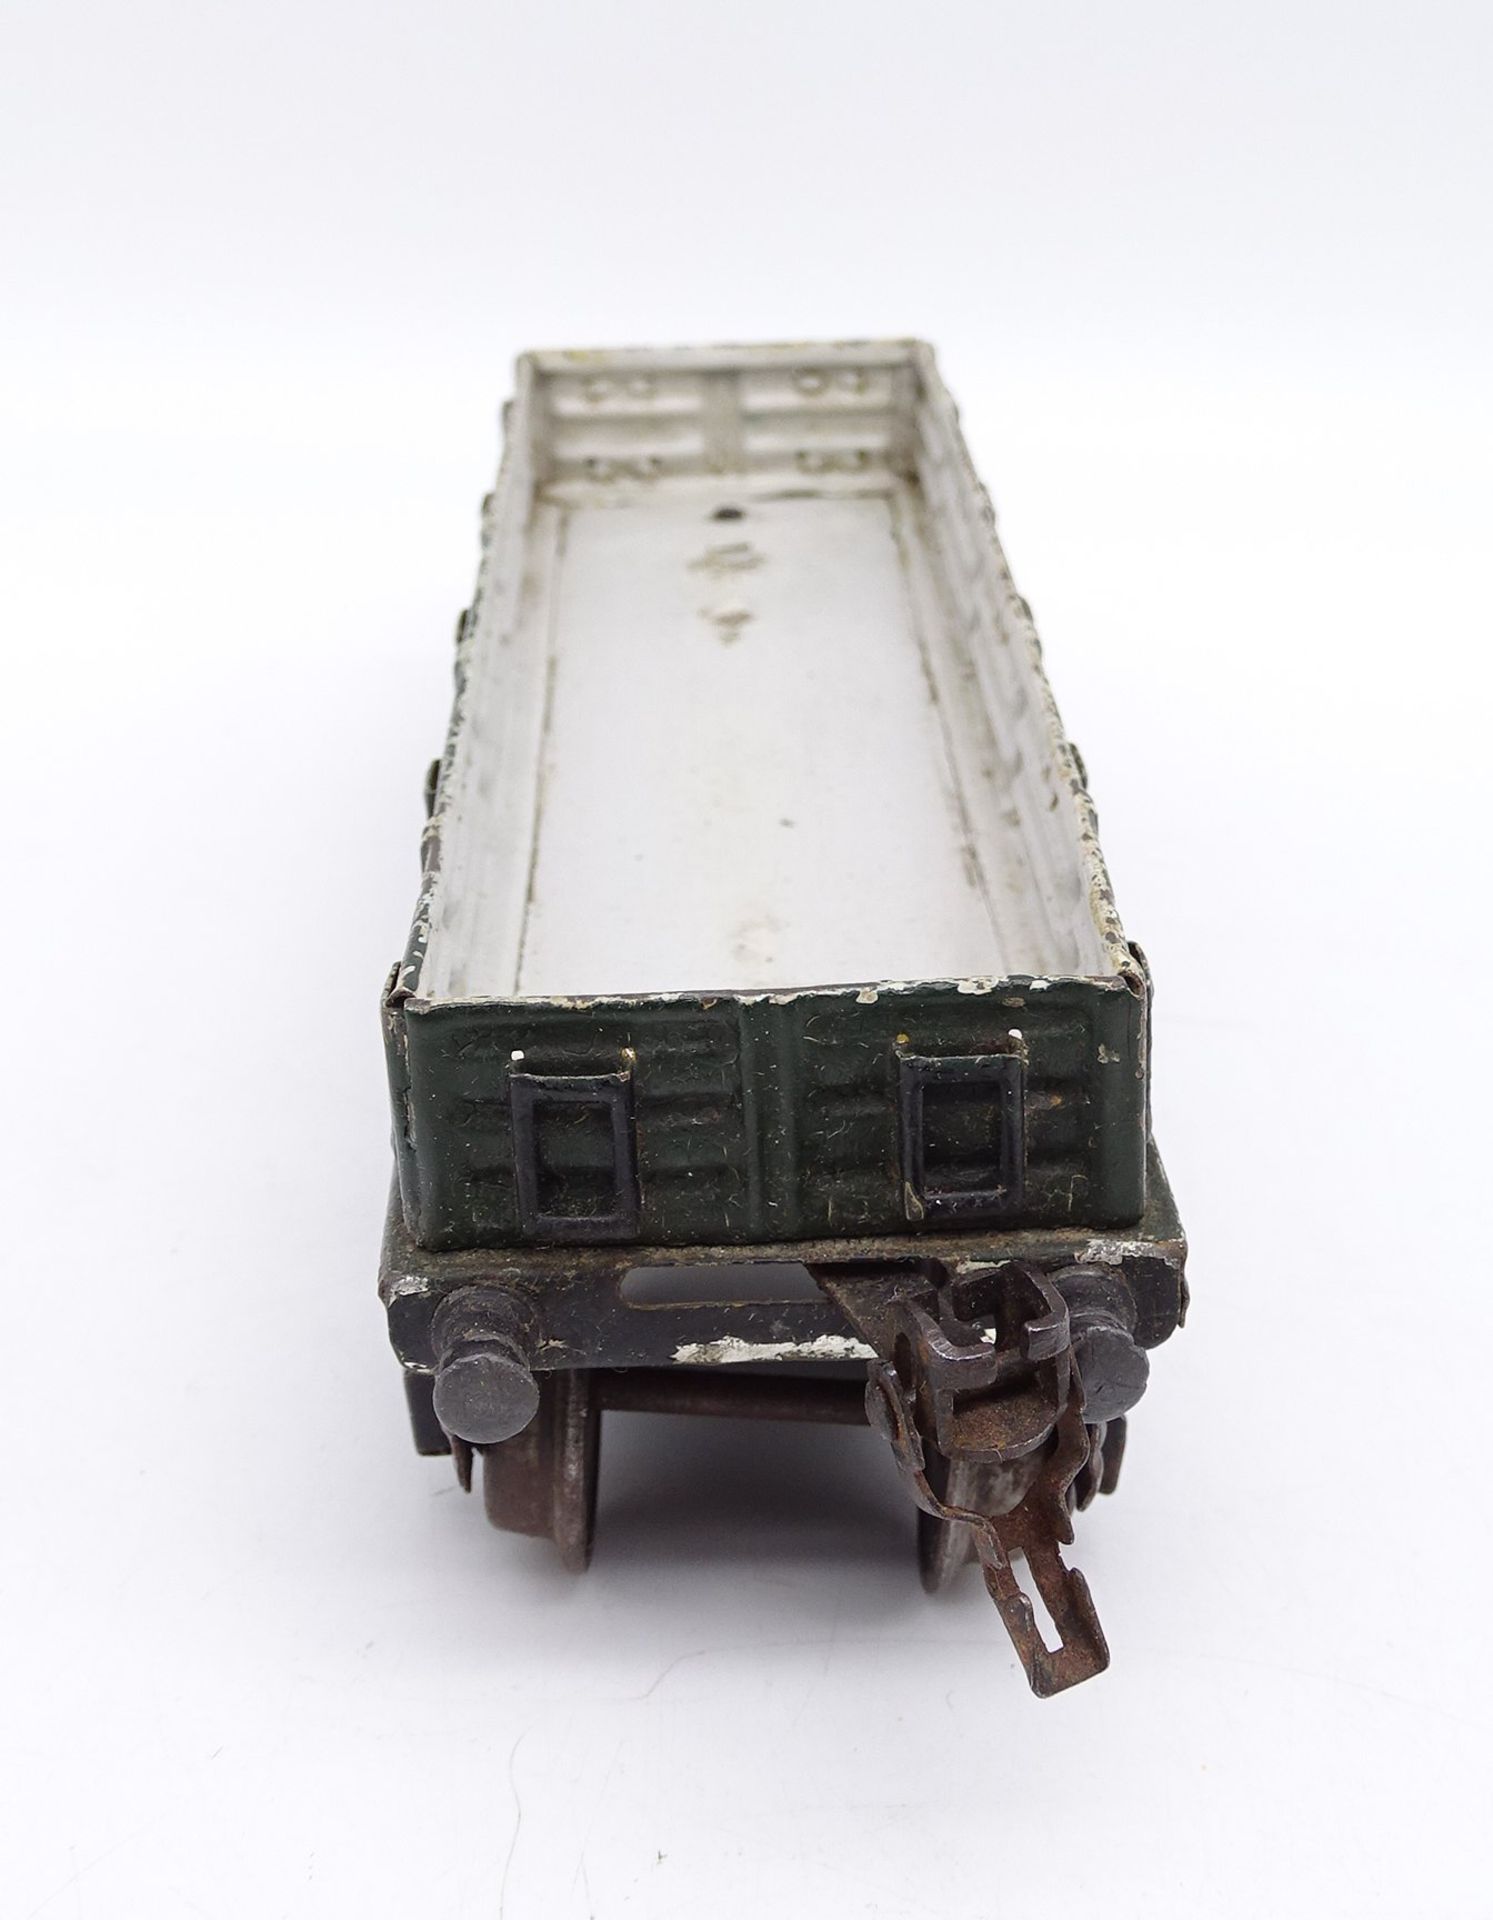 Niederbordwagen Spur 0, 4-achsig, Märklin, 20er-Jahre, 23 x 5,5 x 6 cm, mit Altersspuren - Bild 4 aus 6